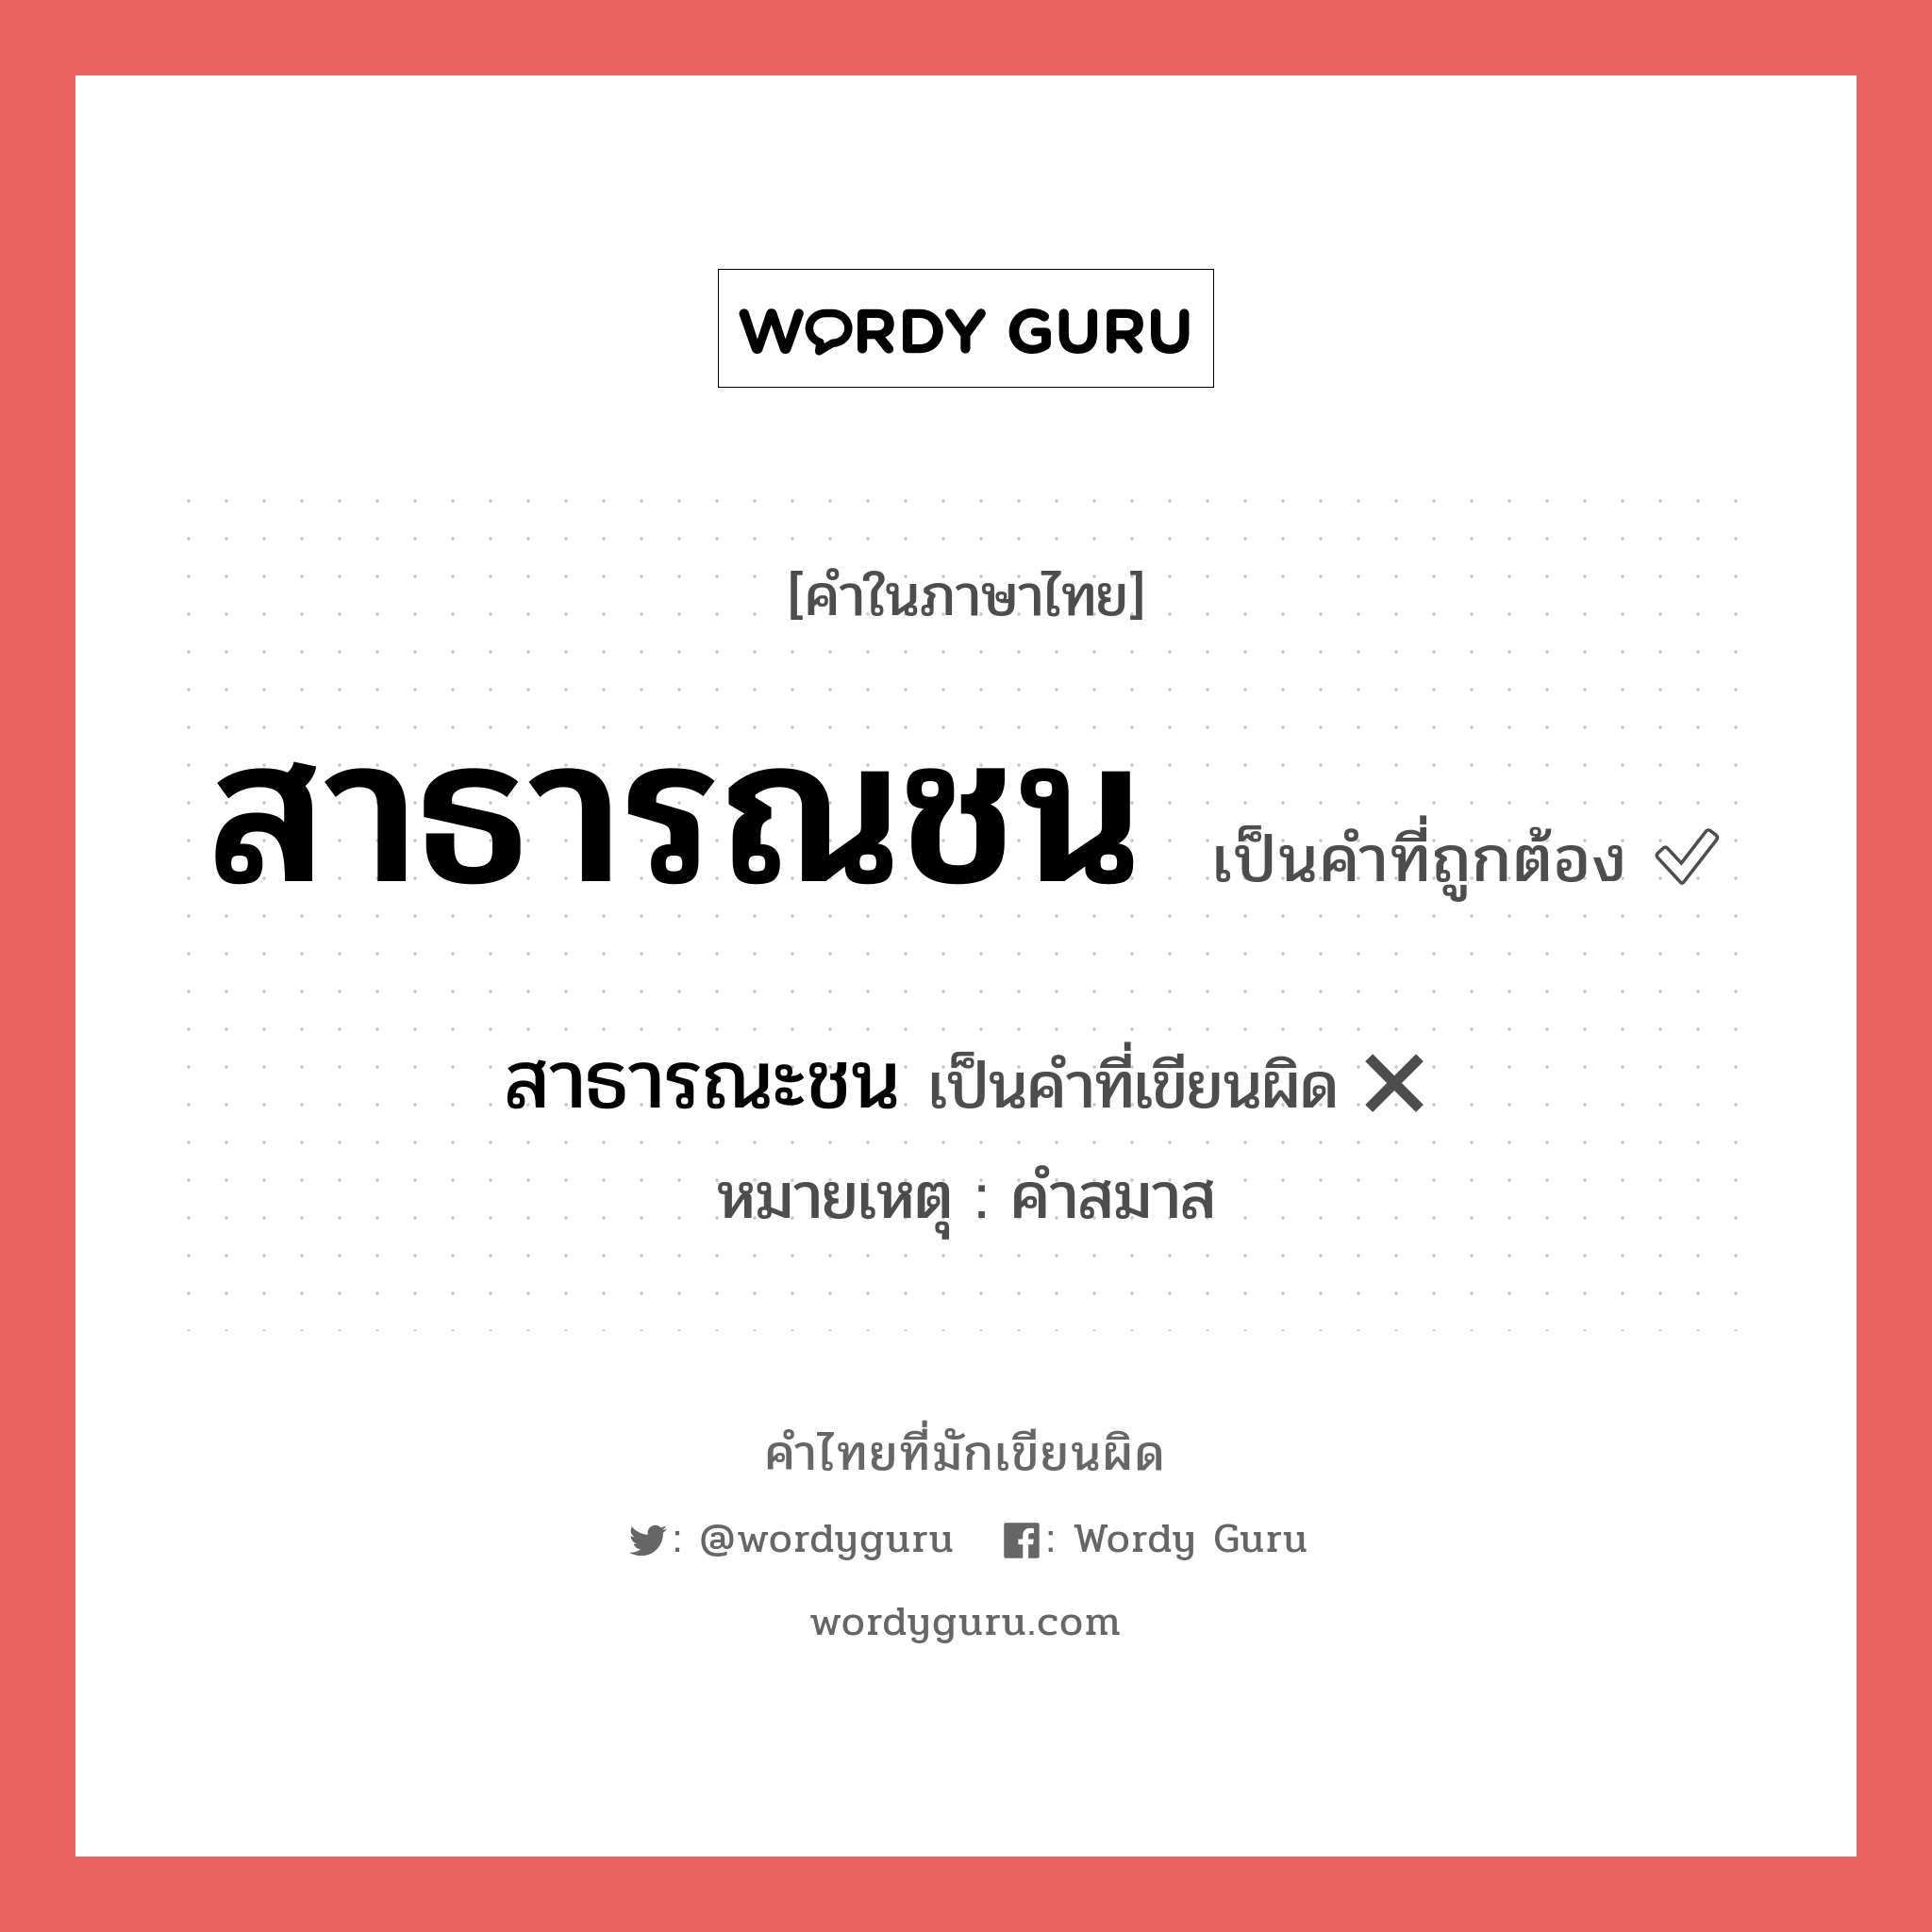 สาธารณชน หรือ สาธารณะชน คำไหนเขียนถูก?, คำในภาษาไทยที่มักเขียนผิด สาธารณชน คำที่ผิด ❌ สาธารณะชน หมายเหตุ คำสมาส